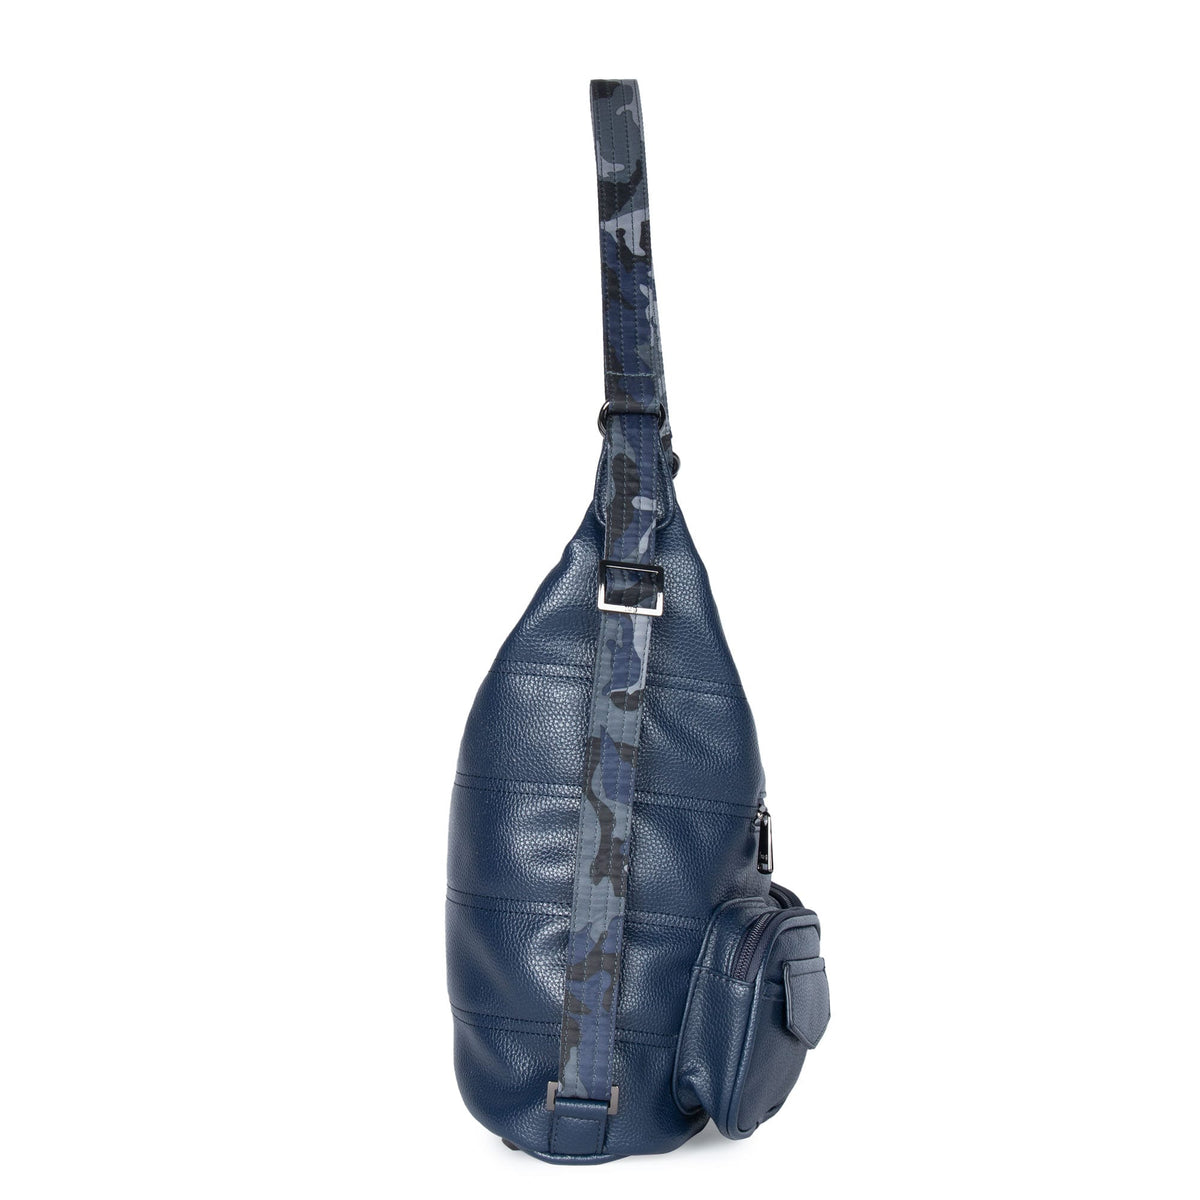 Zipliner Classic VL Convertible Hobo Bag